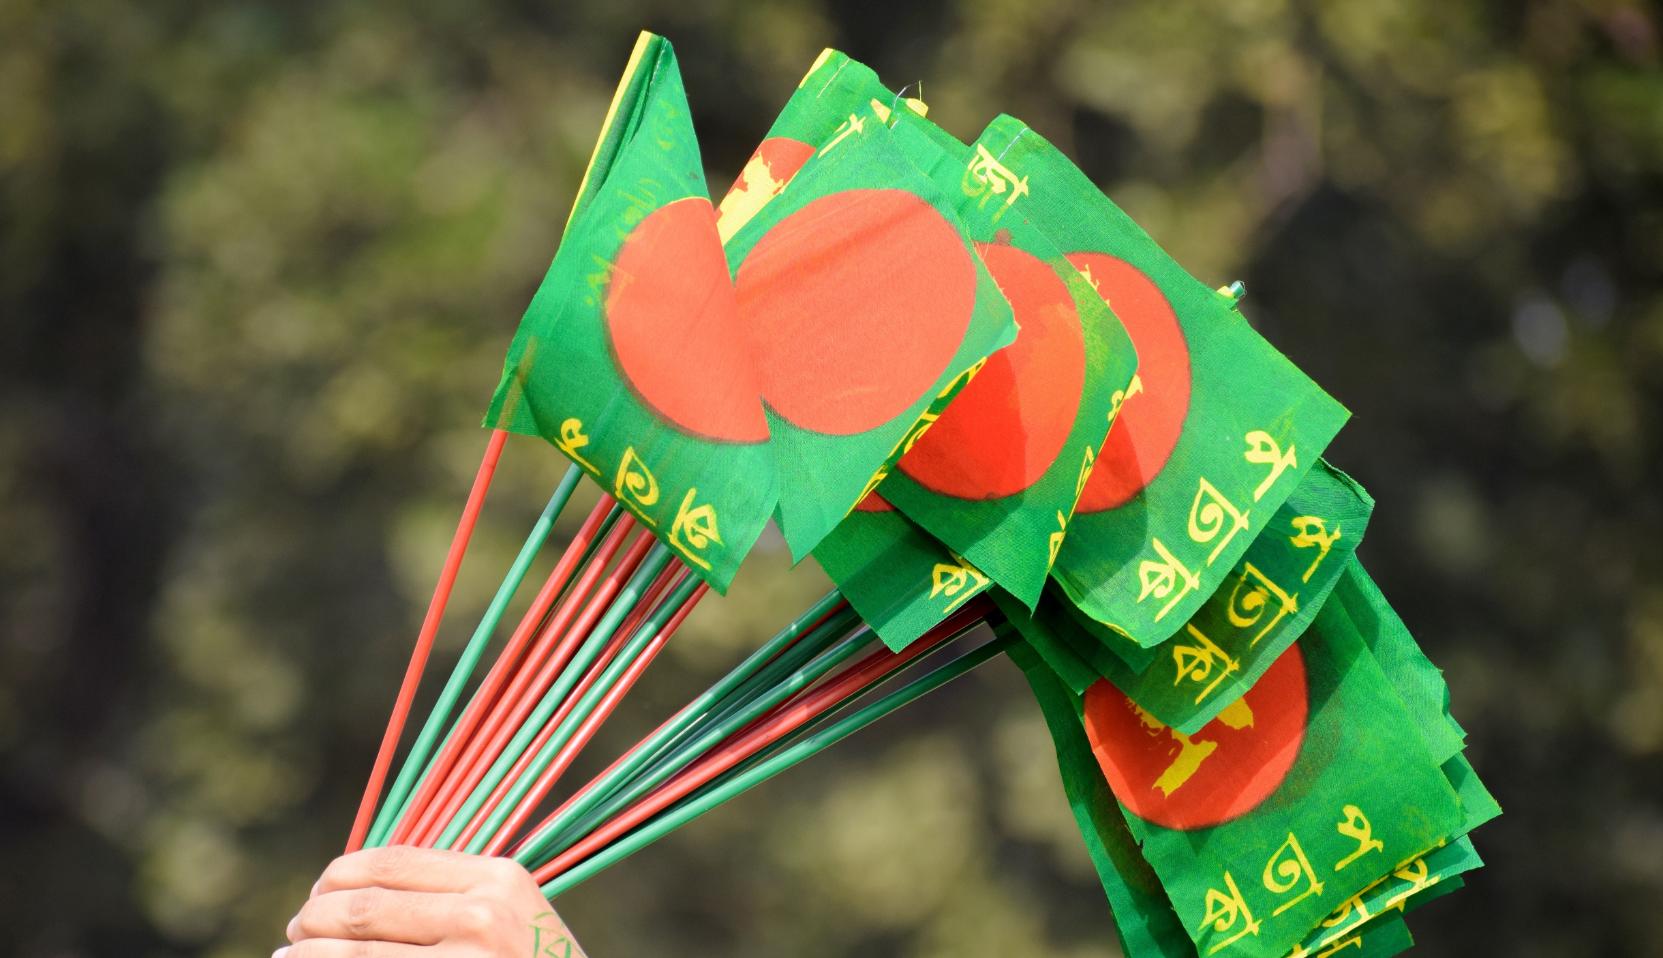 The Bangladesh flag on hand-held sticks.